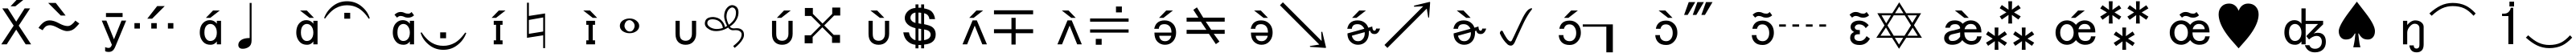 Пример написания английского алфавита шрифтом Bookshelf Symbol 7